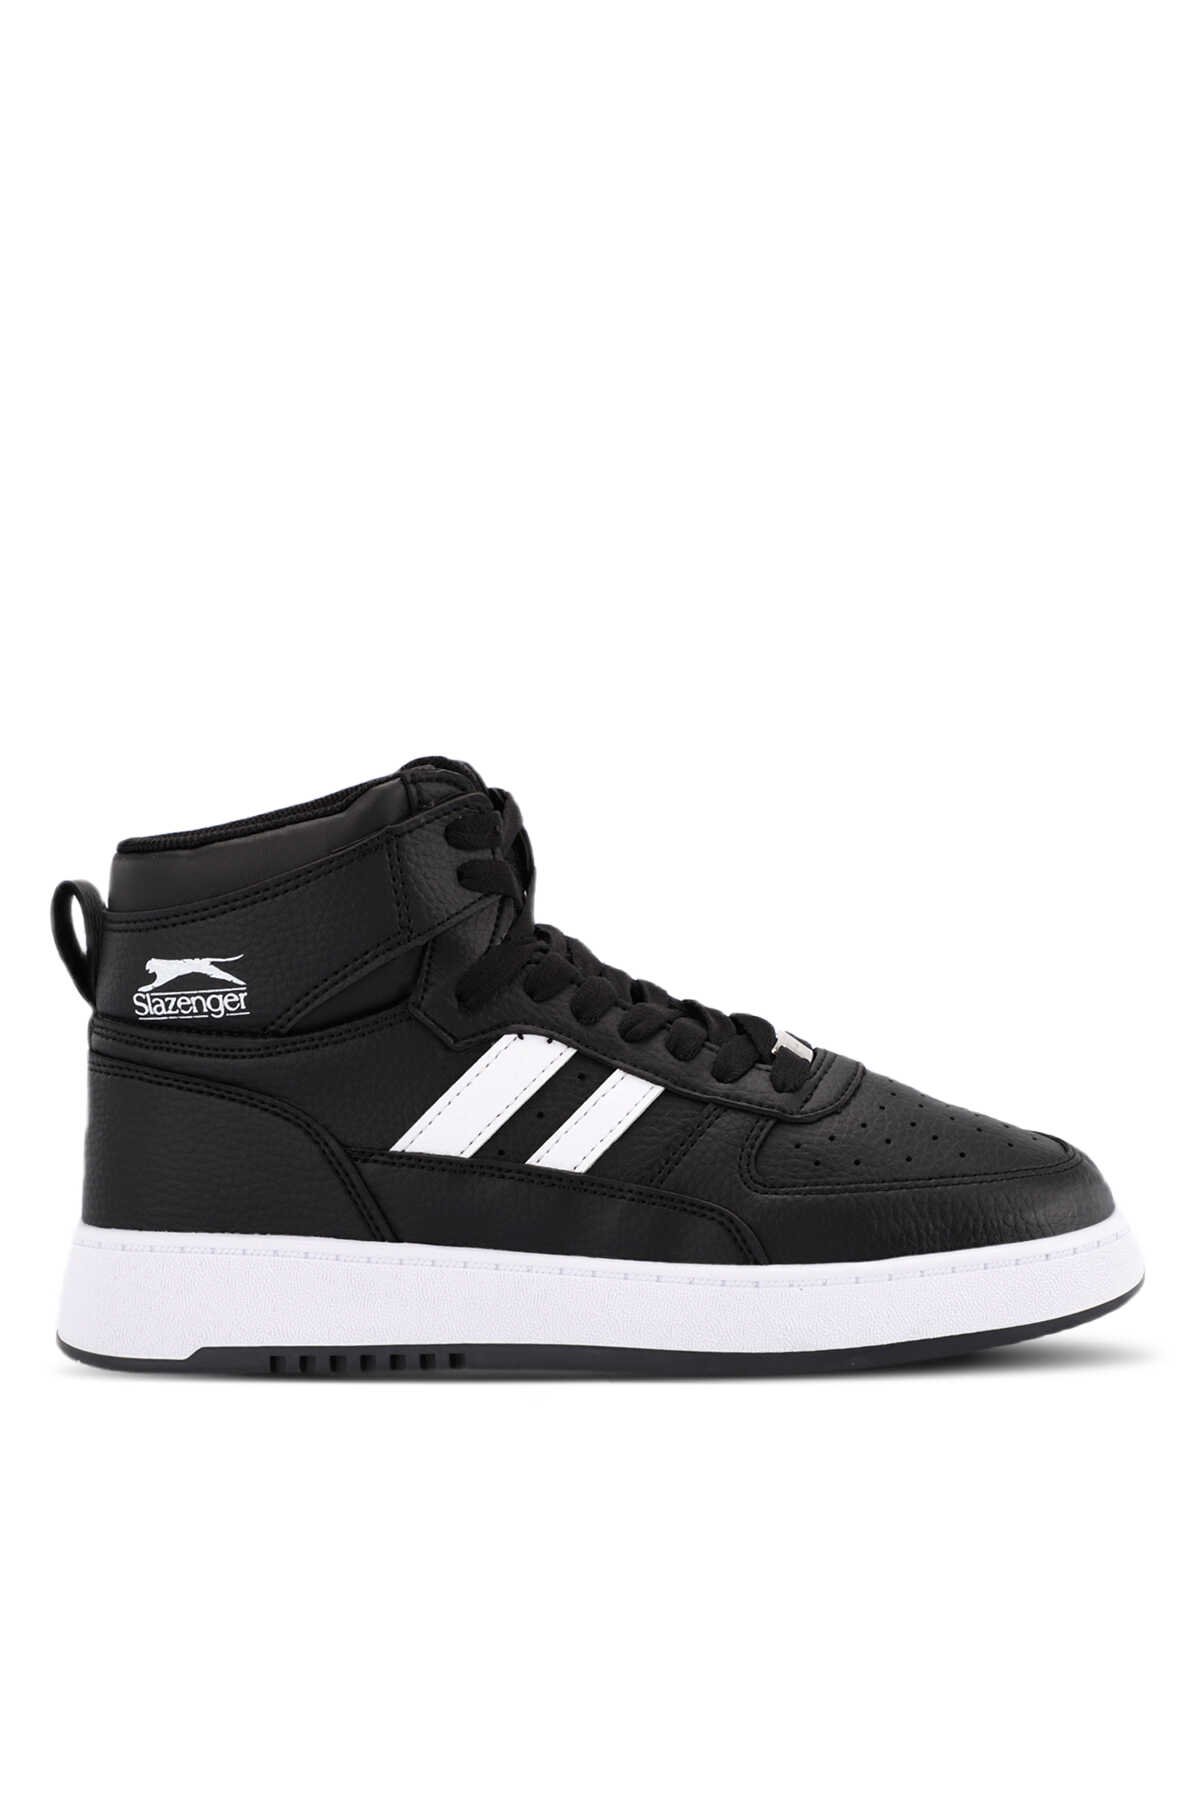 Slazenger - Slazenger DAPHNE HIGH Sneaker Erkek Ayakkabı Siyah / Beyaz